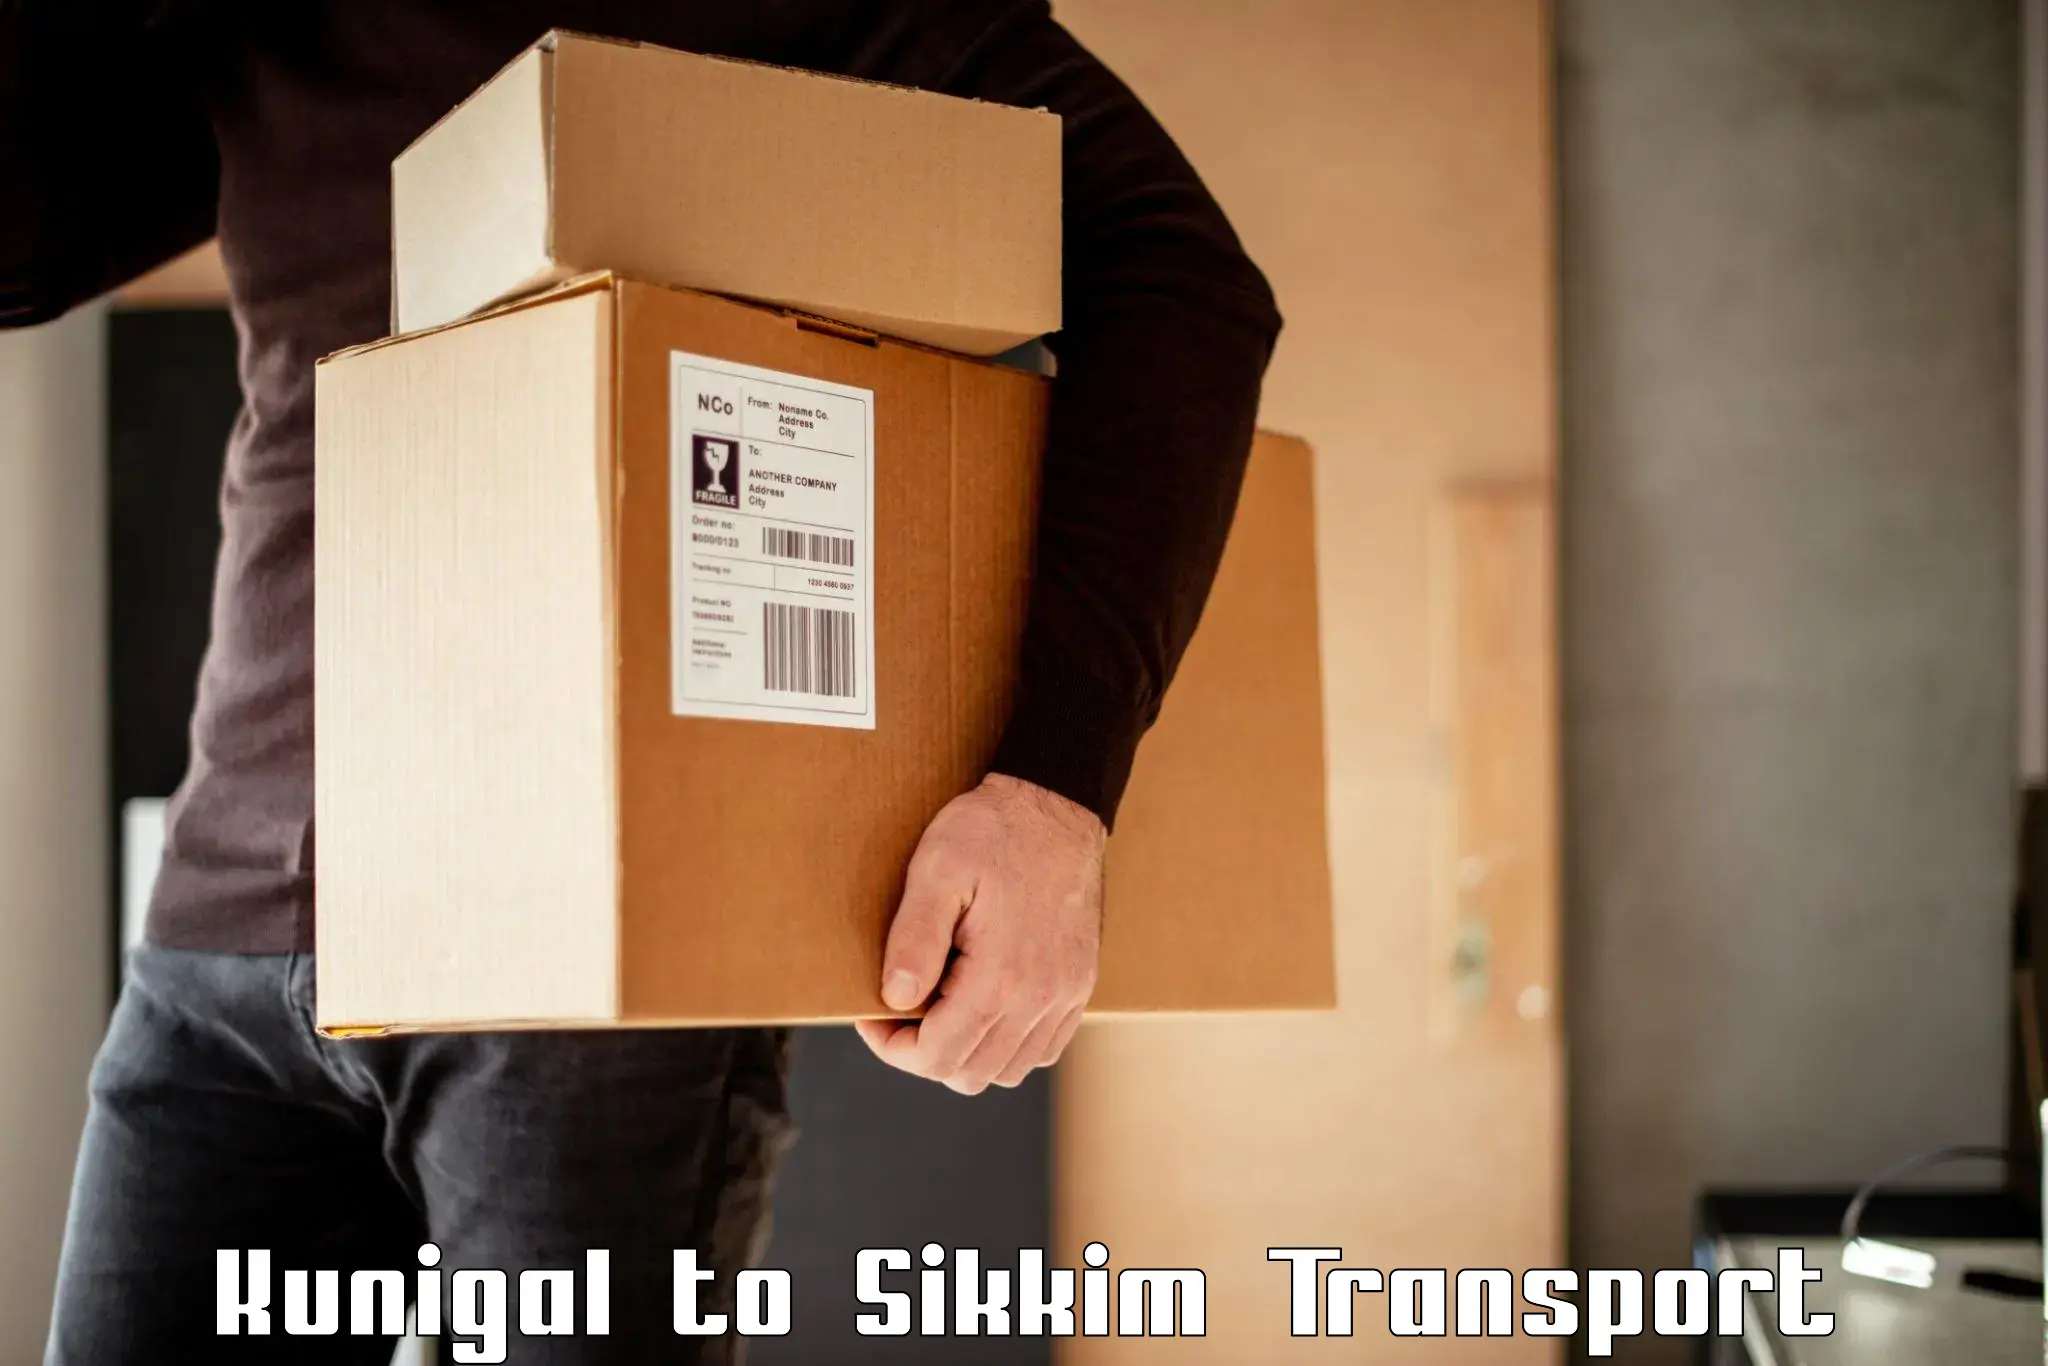 Furniture transport service Kunigal to Mangan